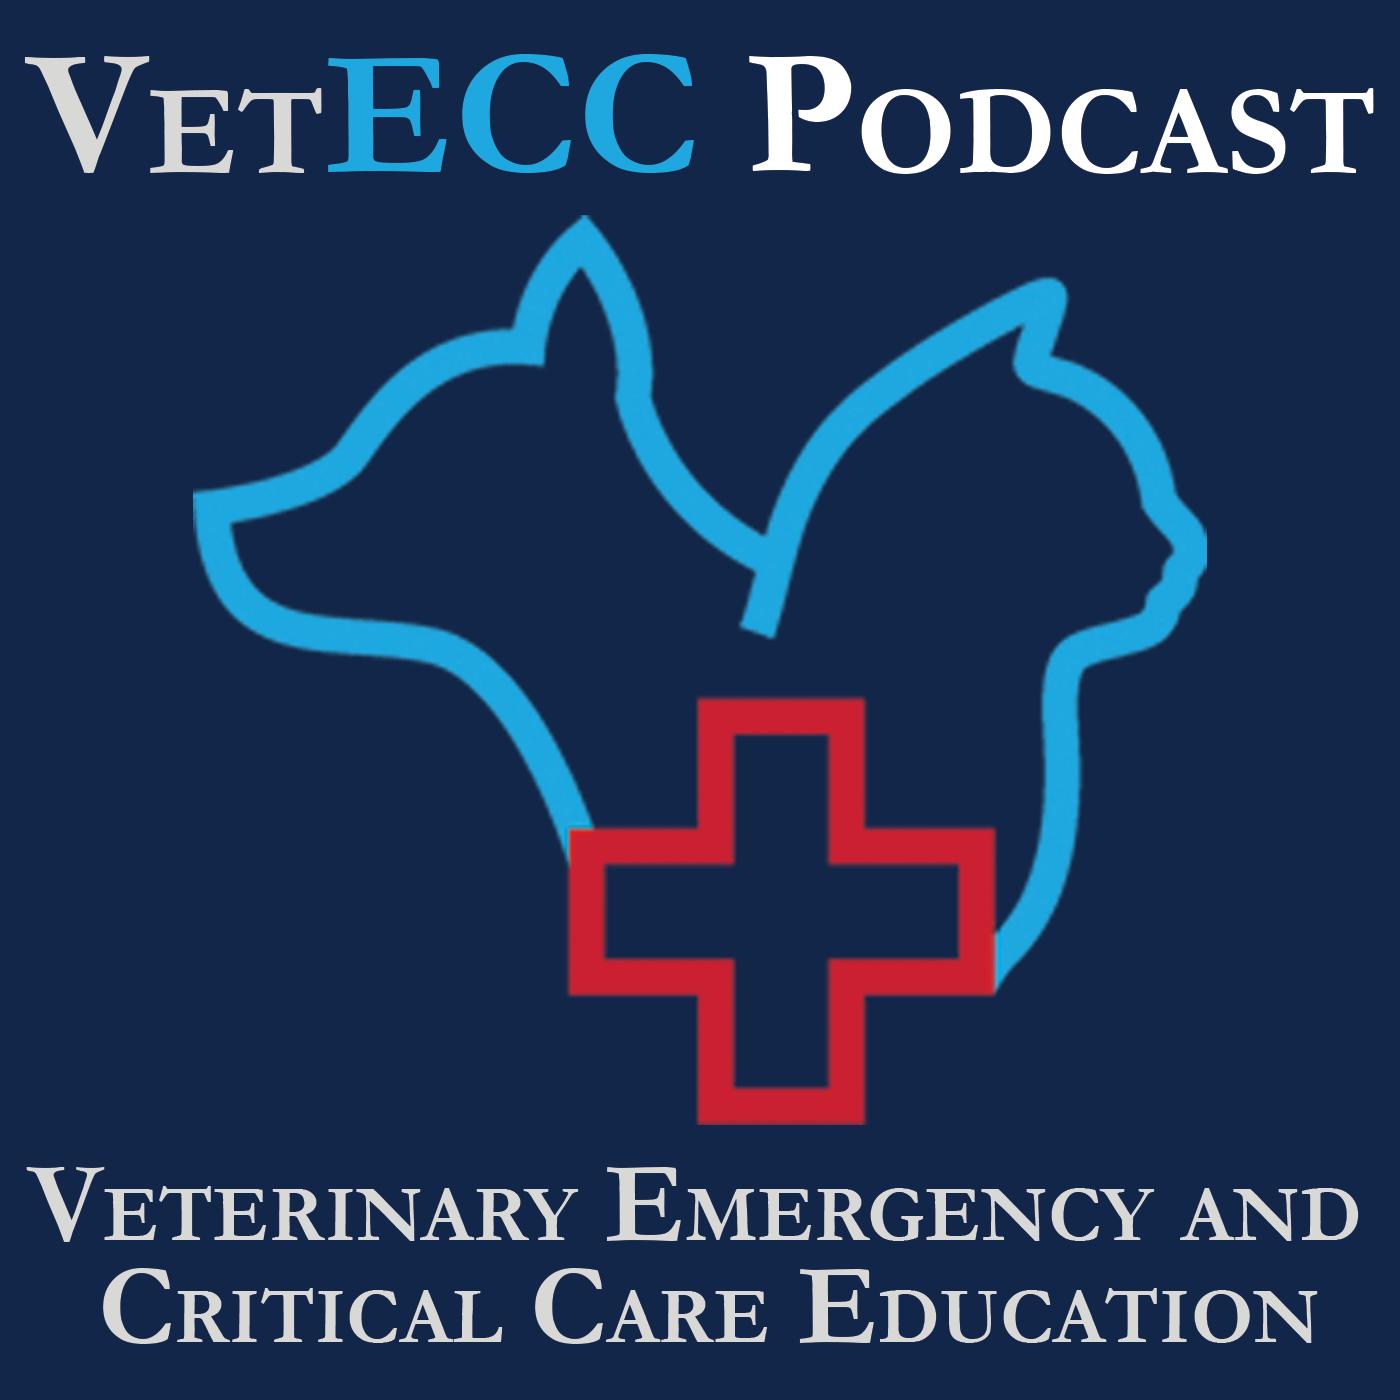 The VetECC Podcast